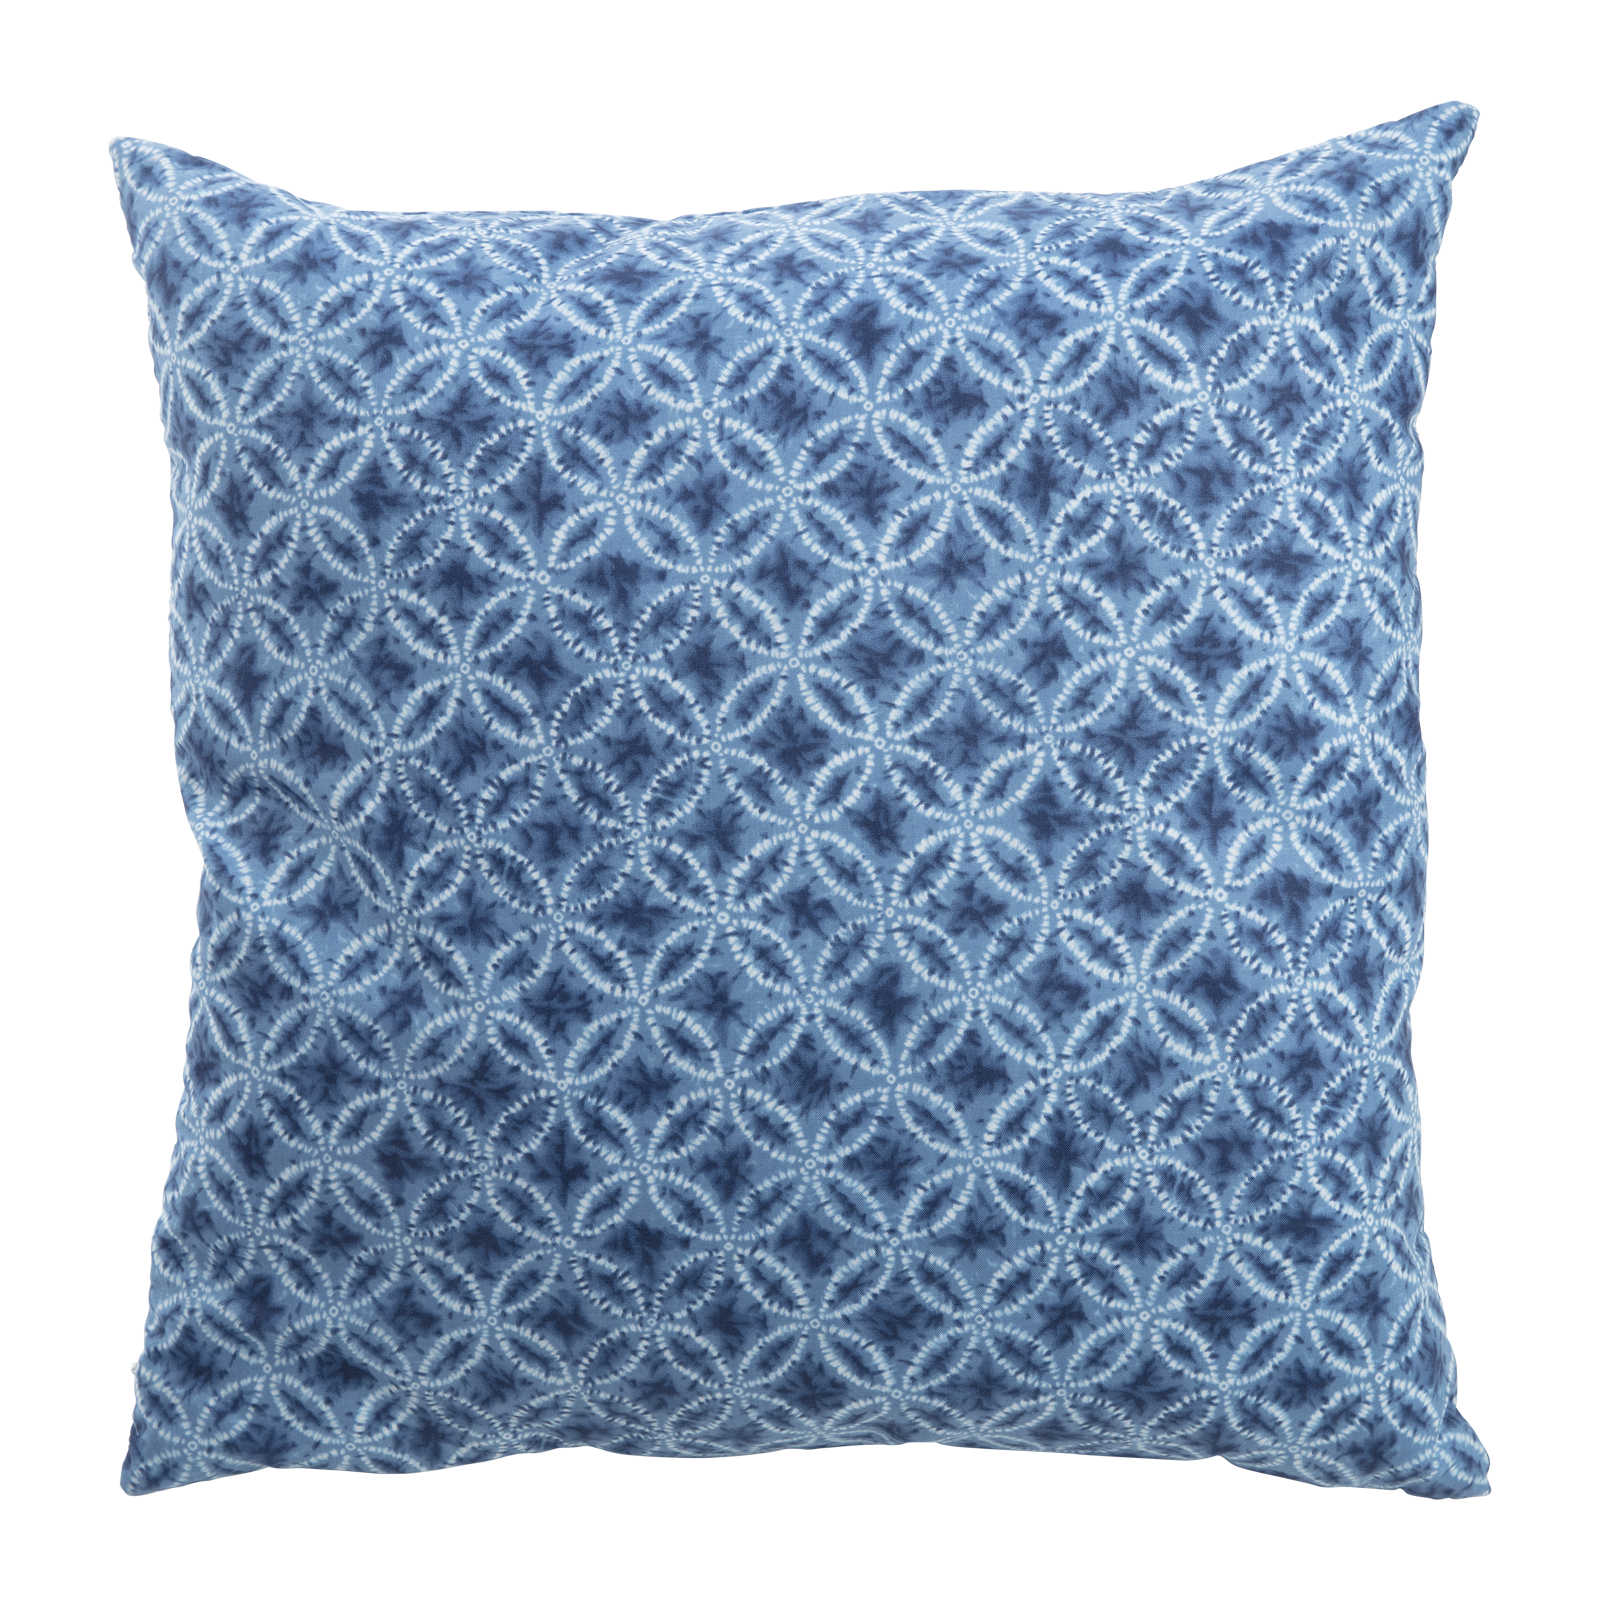 Taidai Blue Throw Pillow